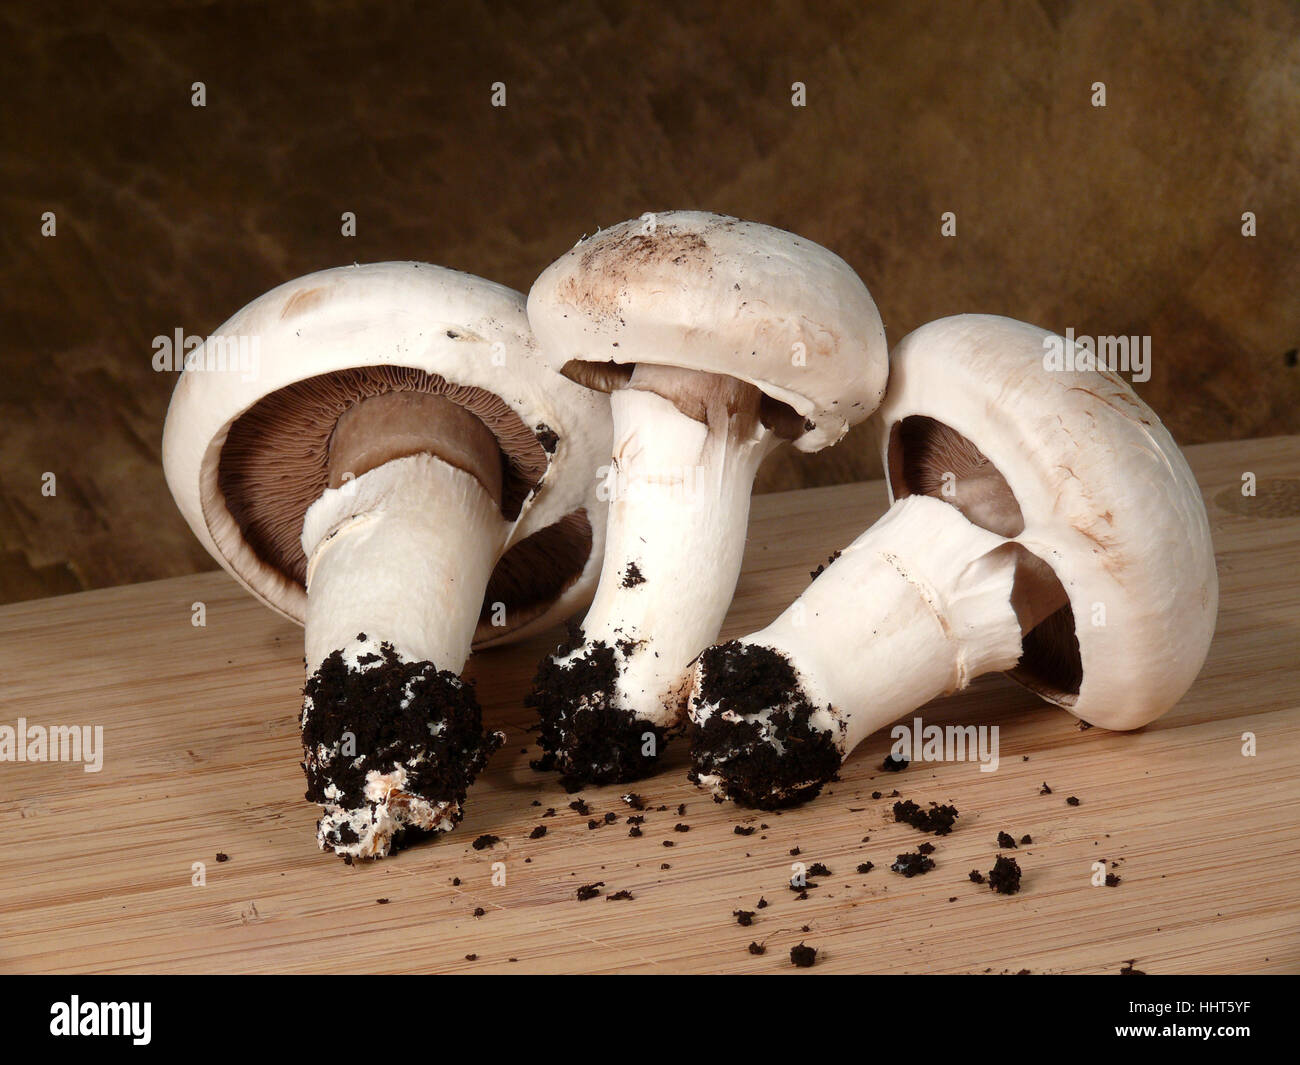 Funghi, substrato, still life, antiquariato e funghi, retrò, substrato, Foto Stock